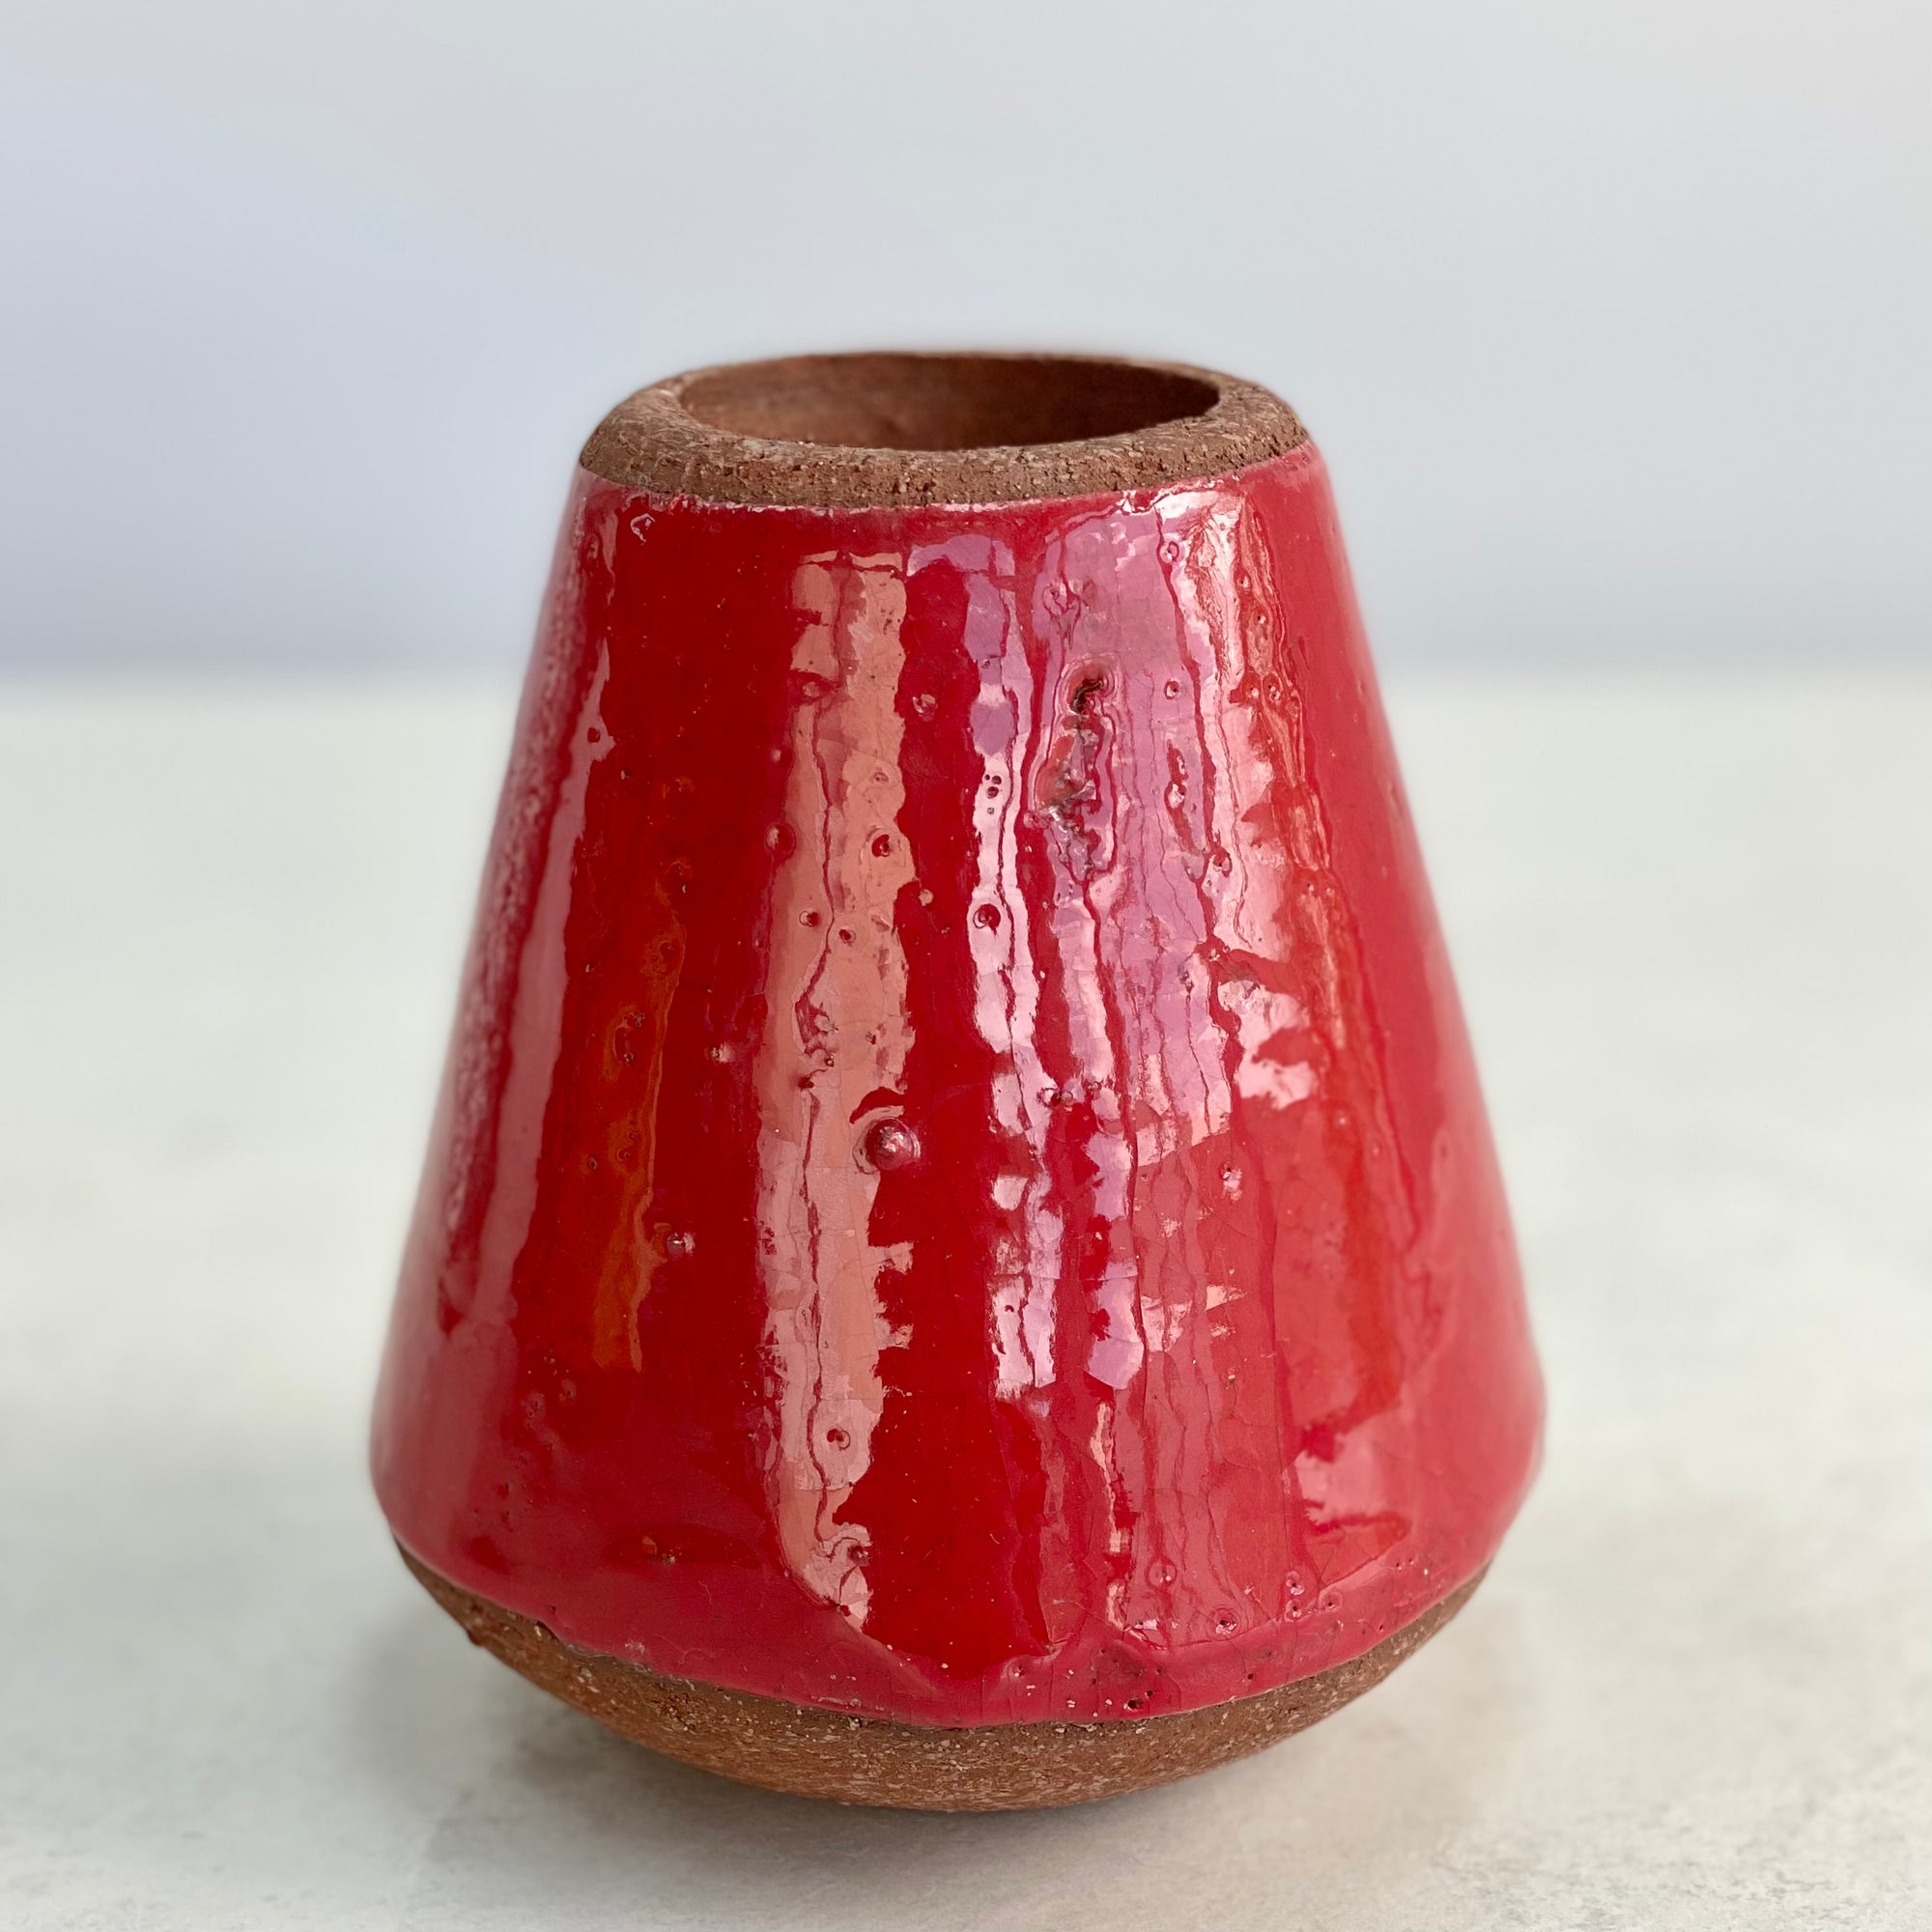 Volcano Ceramic Red Vase Small